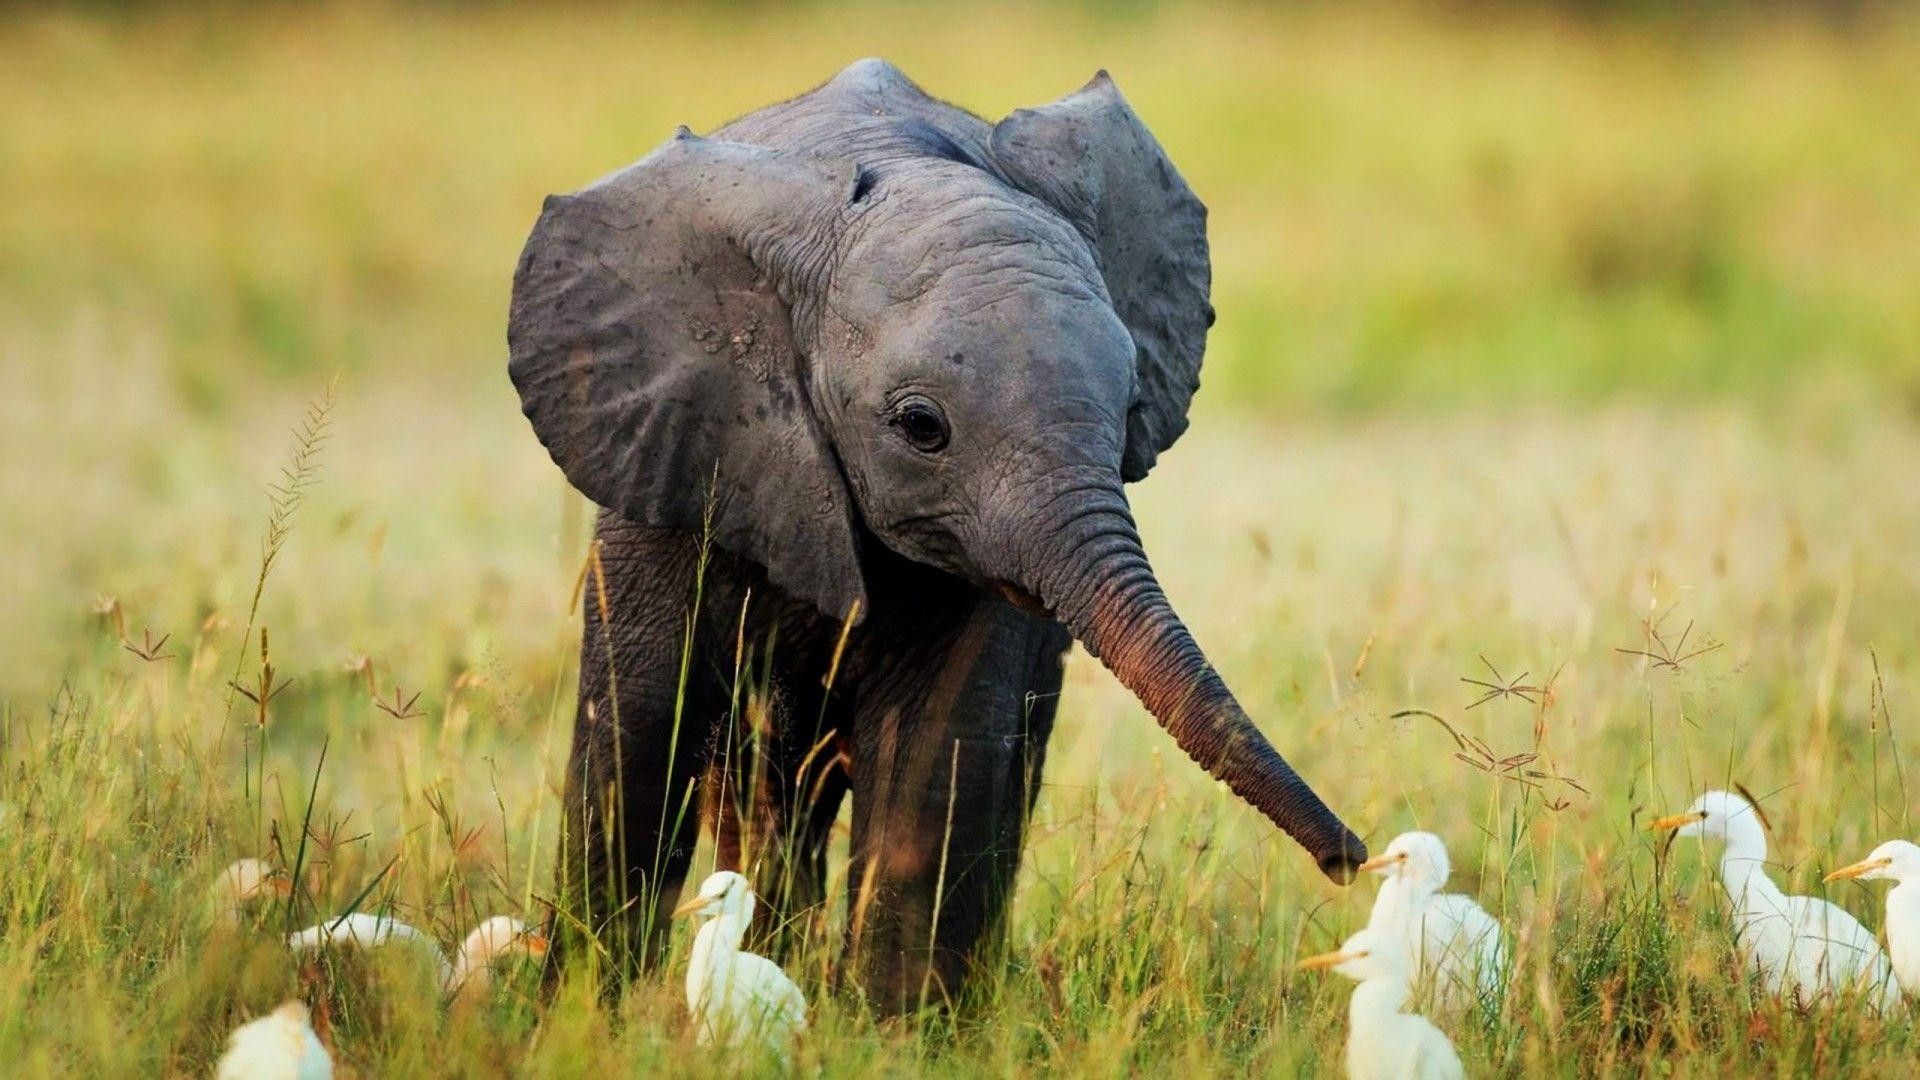 Fondos de pantalla de elefantes bebés - FondosMil